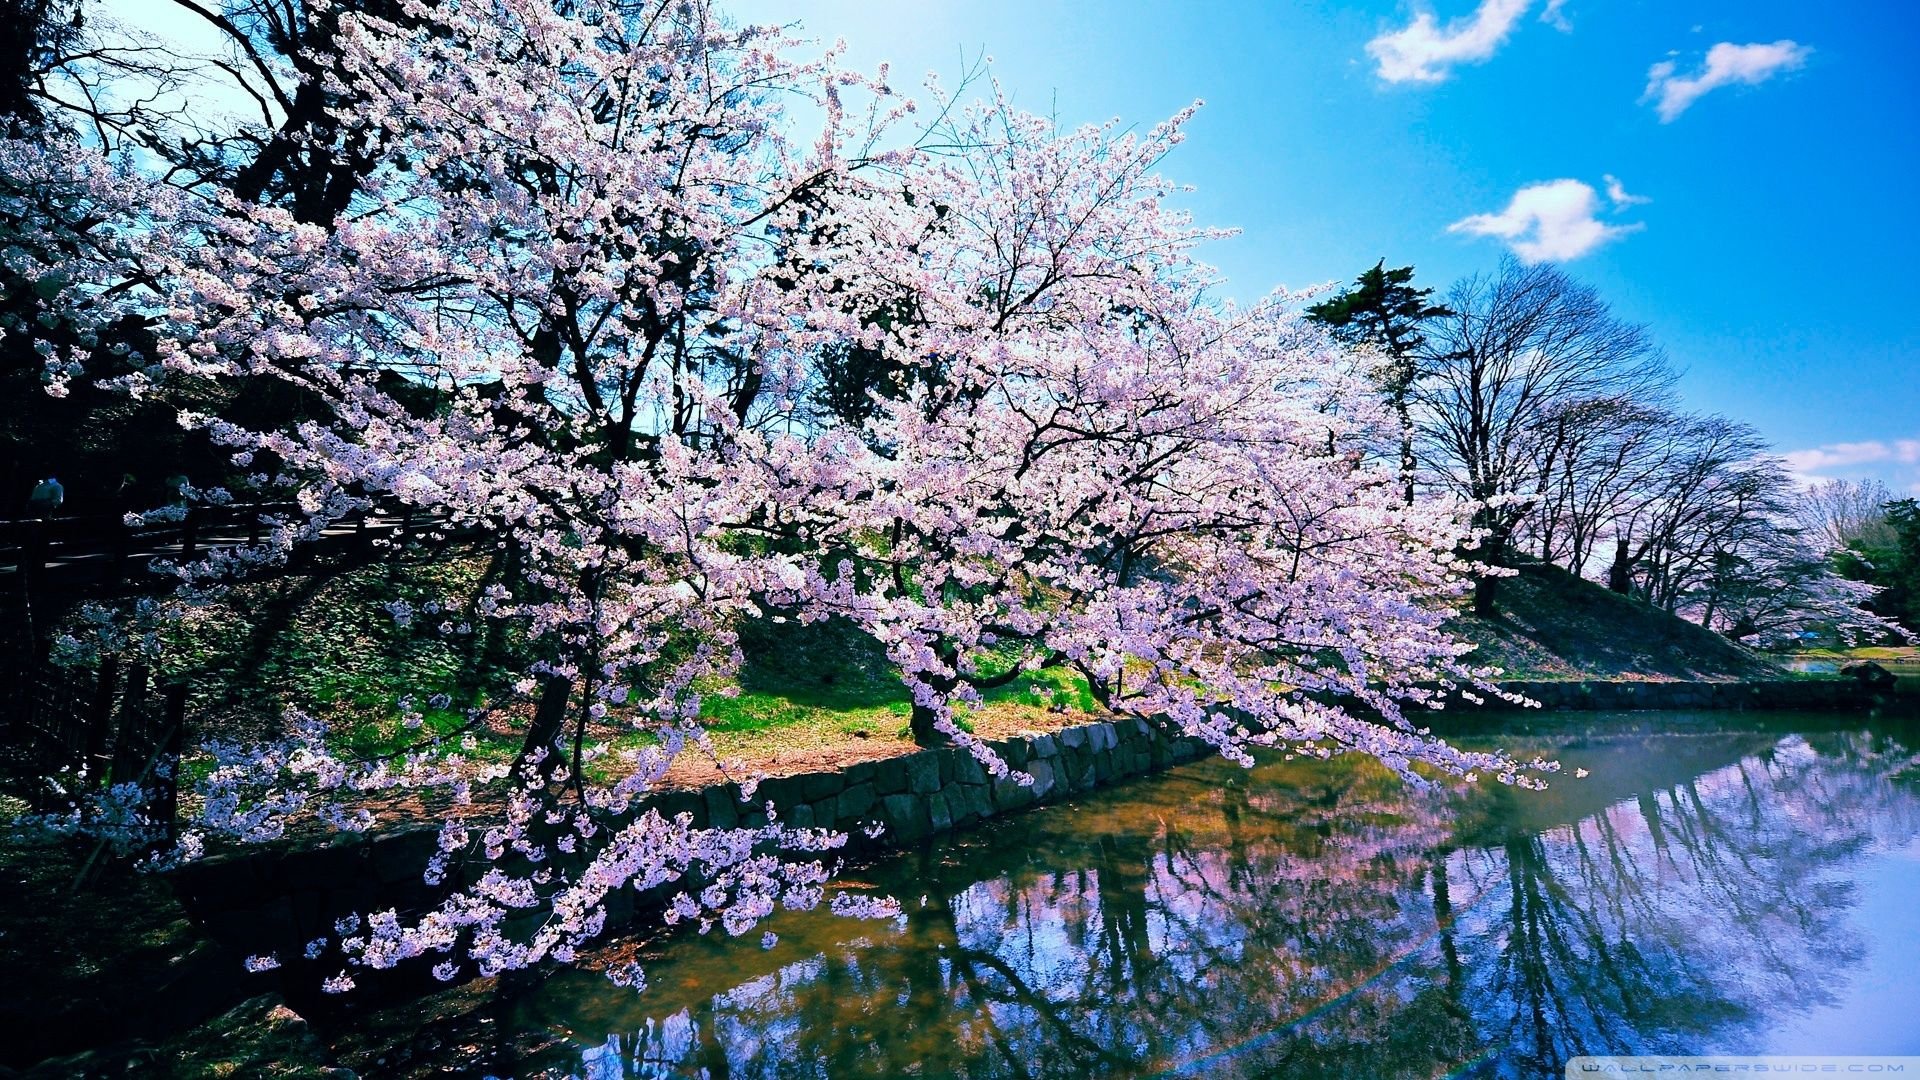 جذاب ترین وااپیپر درخت هایی با شکوفه های یاسی کنار دریاچه مخصوص دسکتاپ